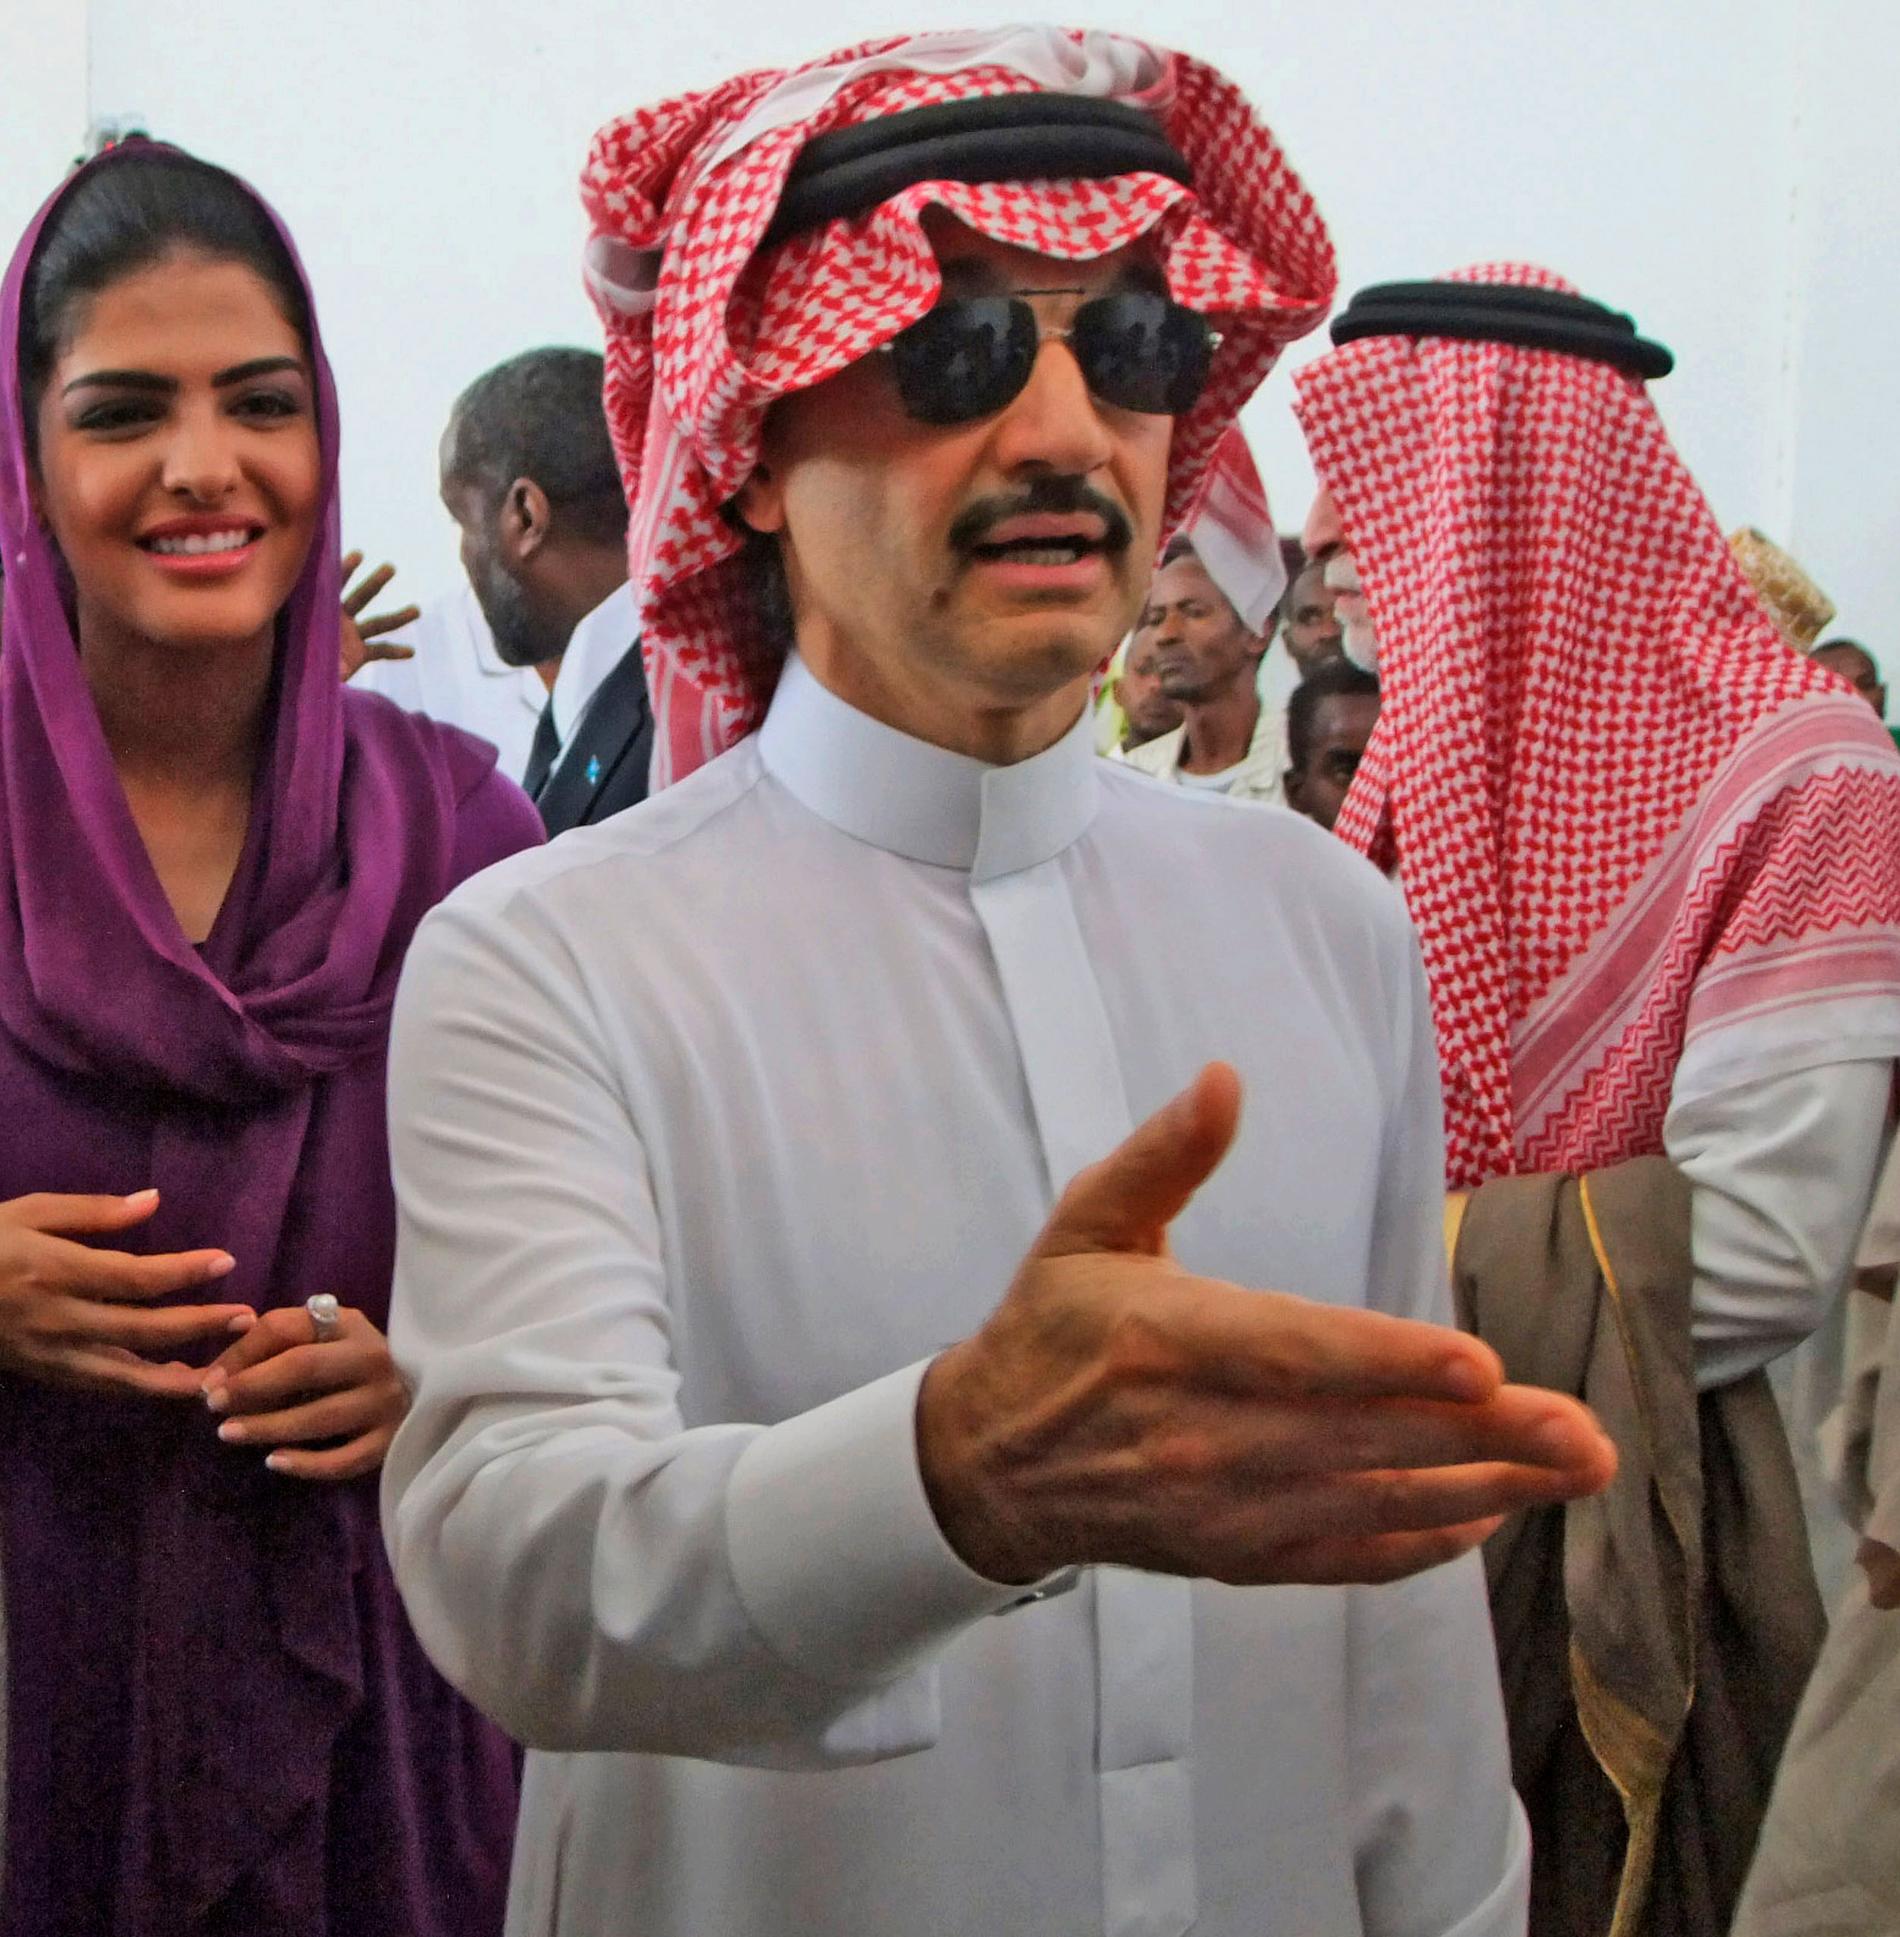 Prins Al-Waleed bin Talal, brorson till Kung Salman, är en av de elva prinsar som ska ha gripits.